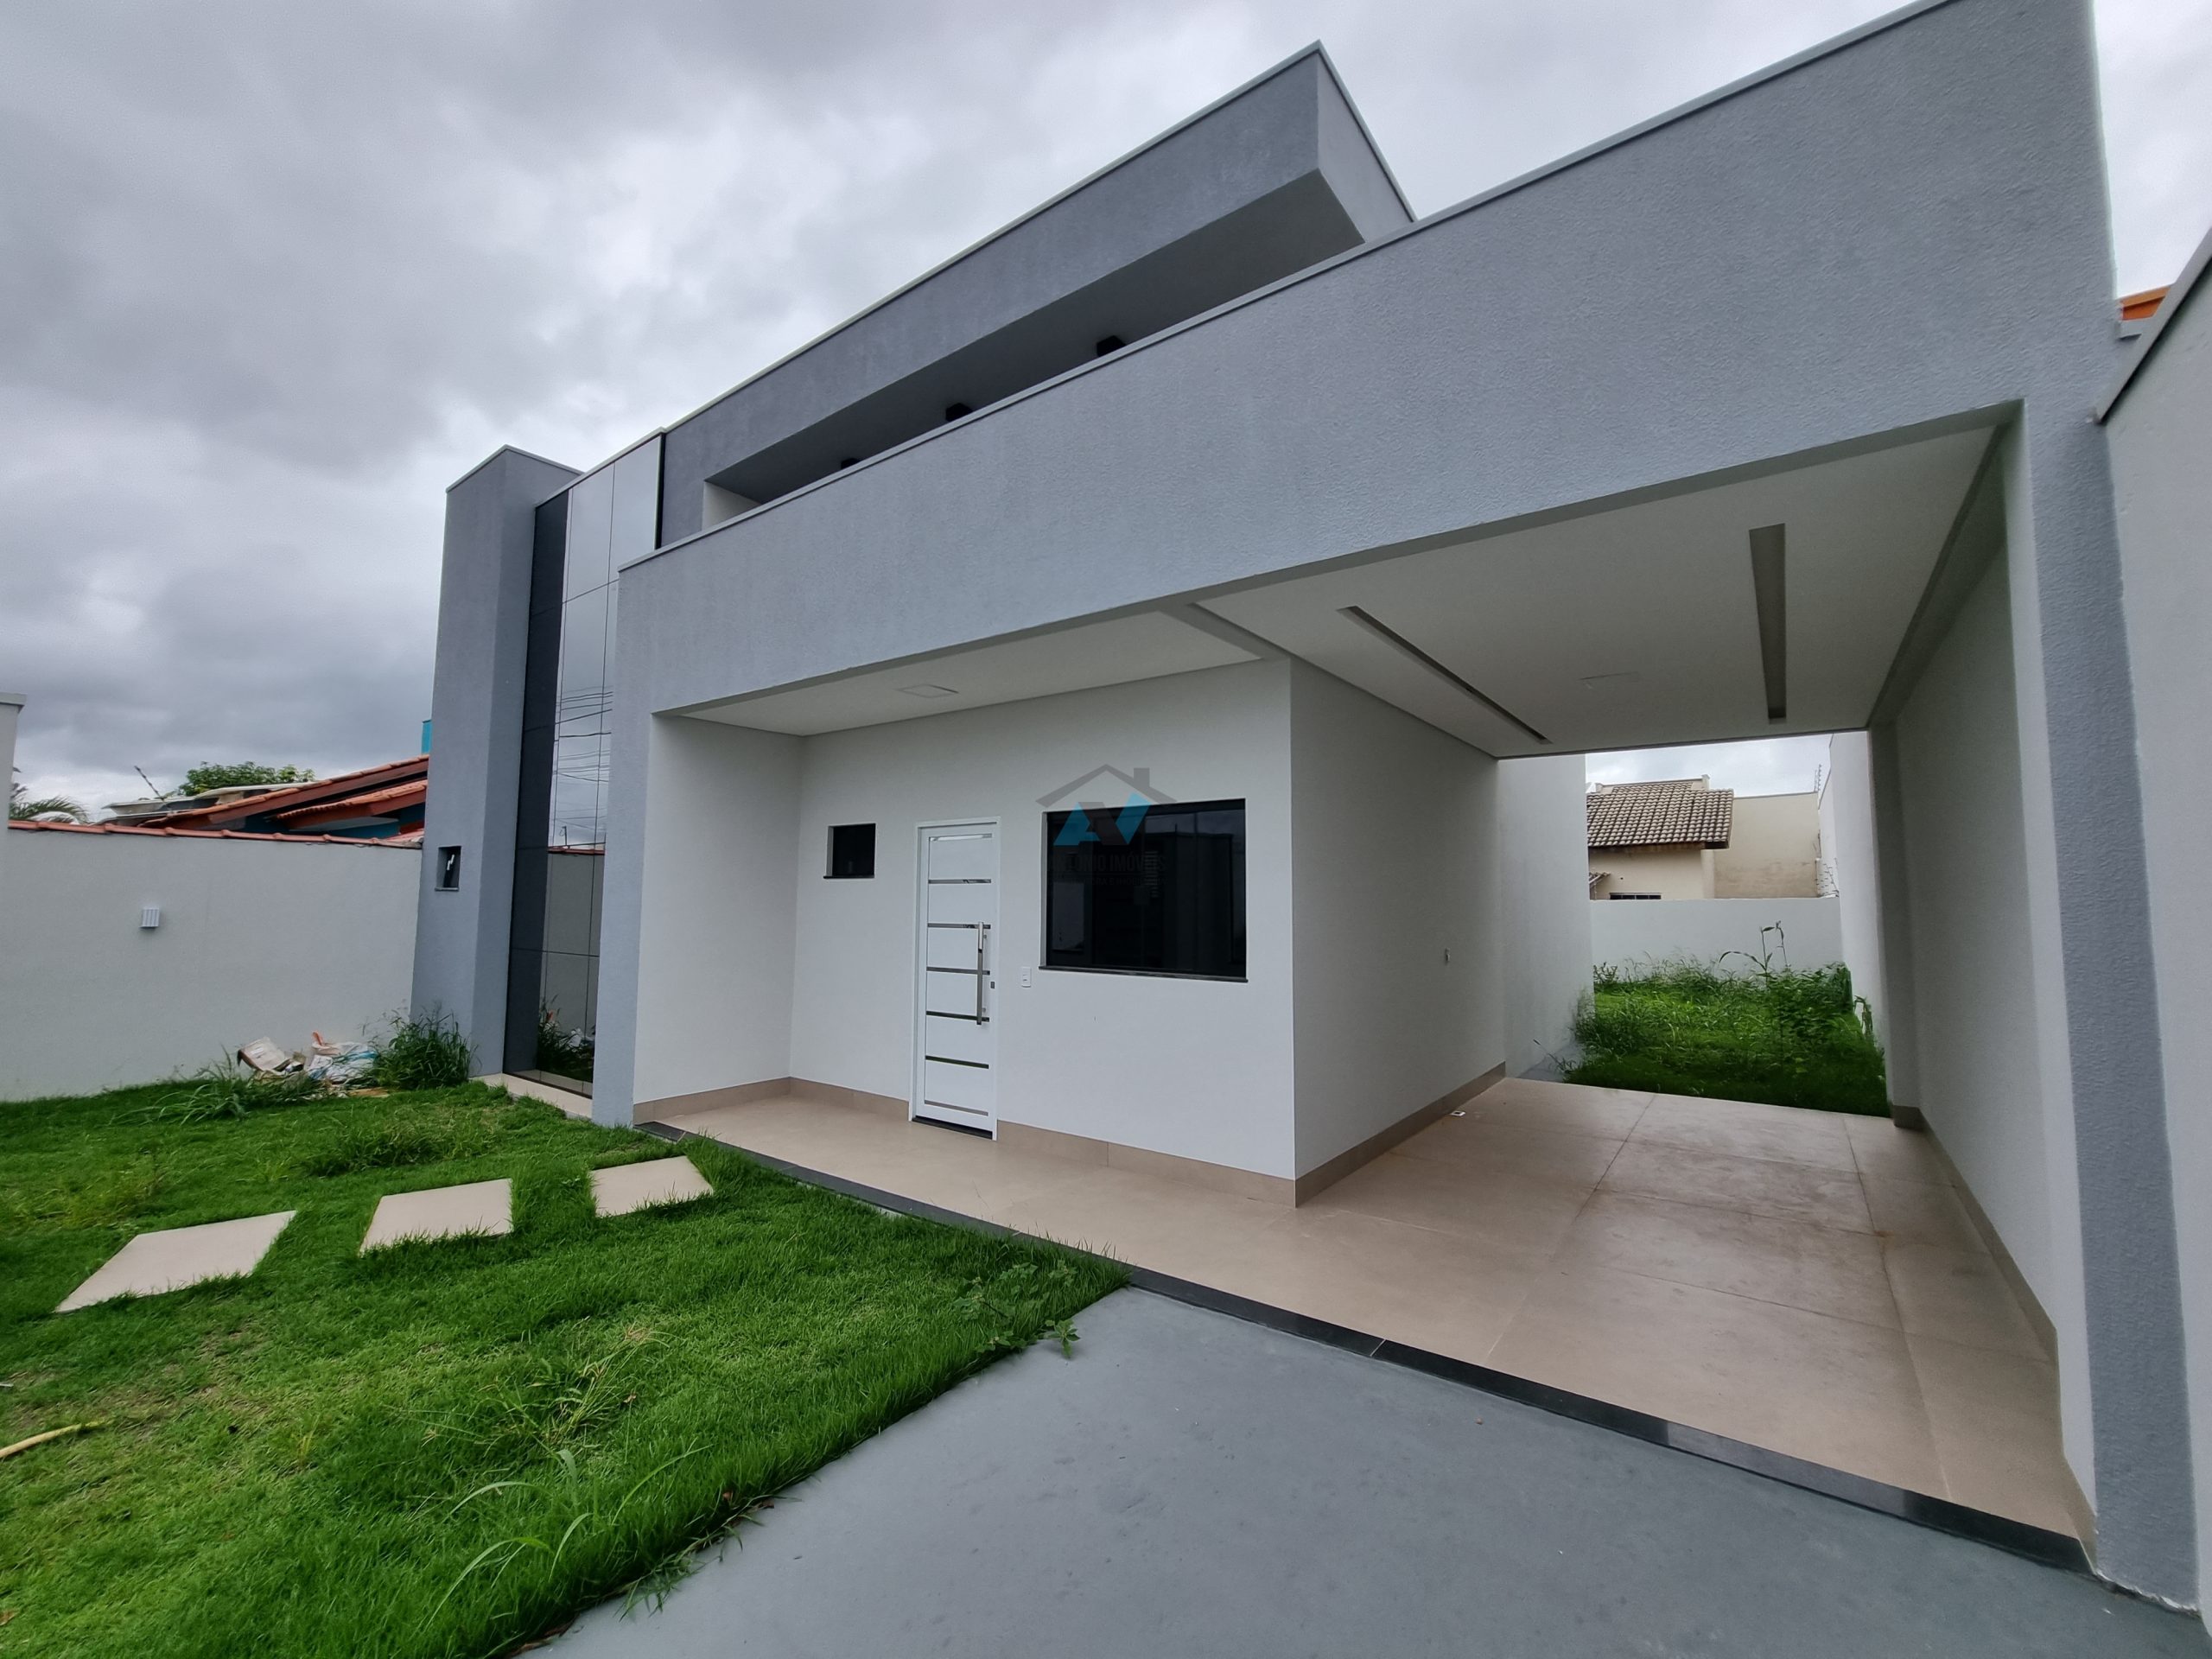 Cod. 054 – Casa pronta a venda no Buritis 1 com fachada moderna e aberturas externas em alumínio